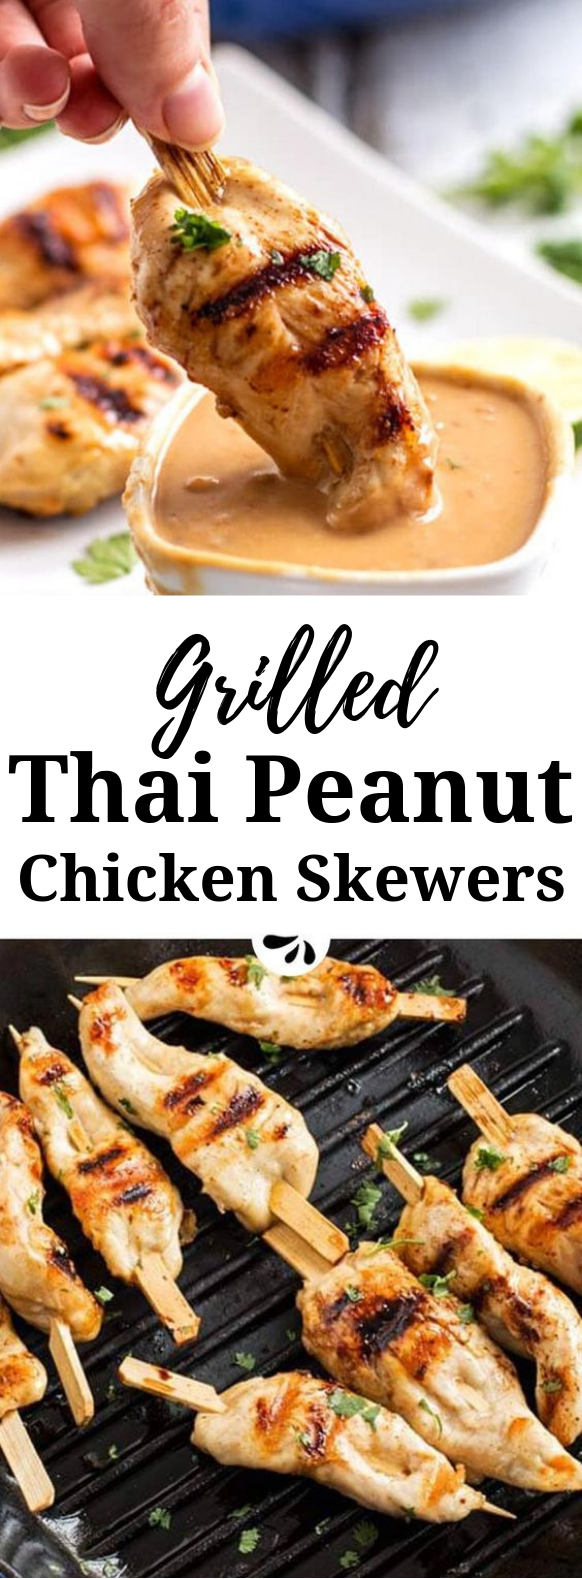 Thai Peanut Chicken Skewers #Dinner #Chicken